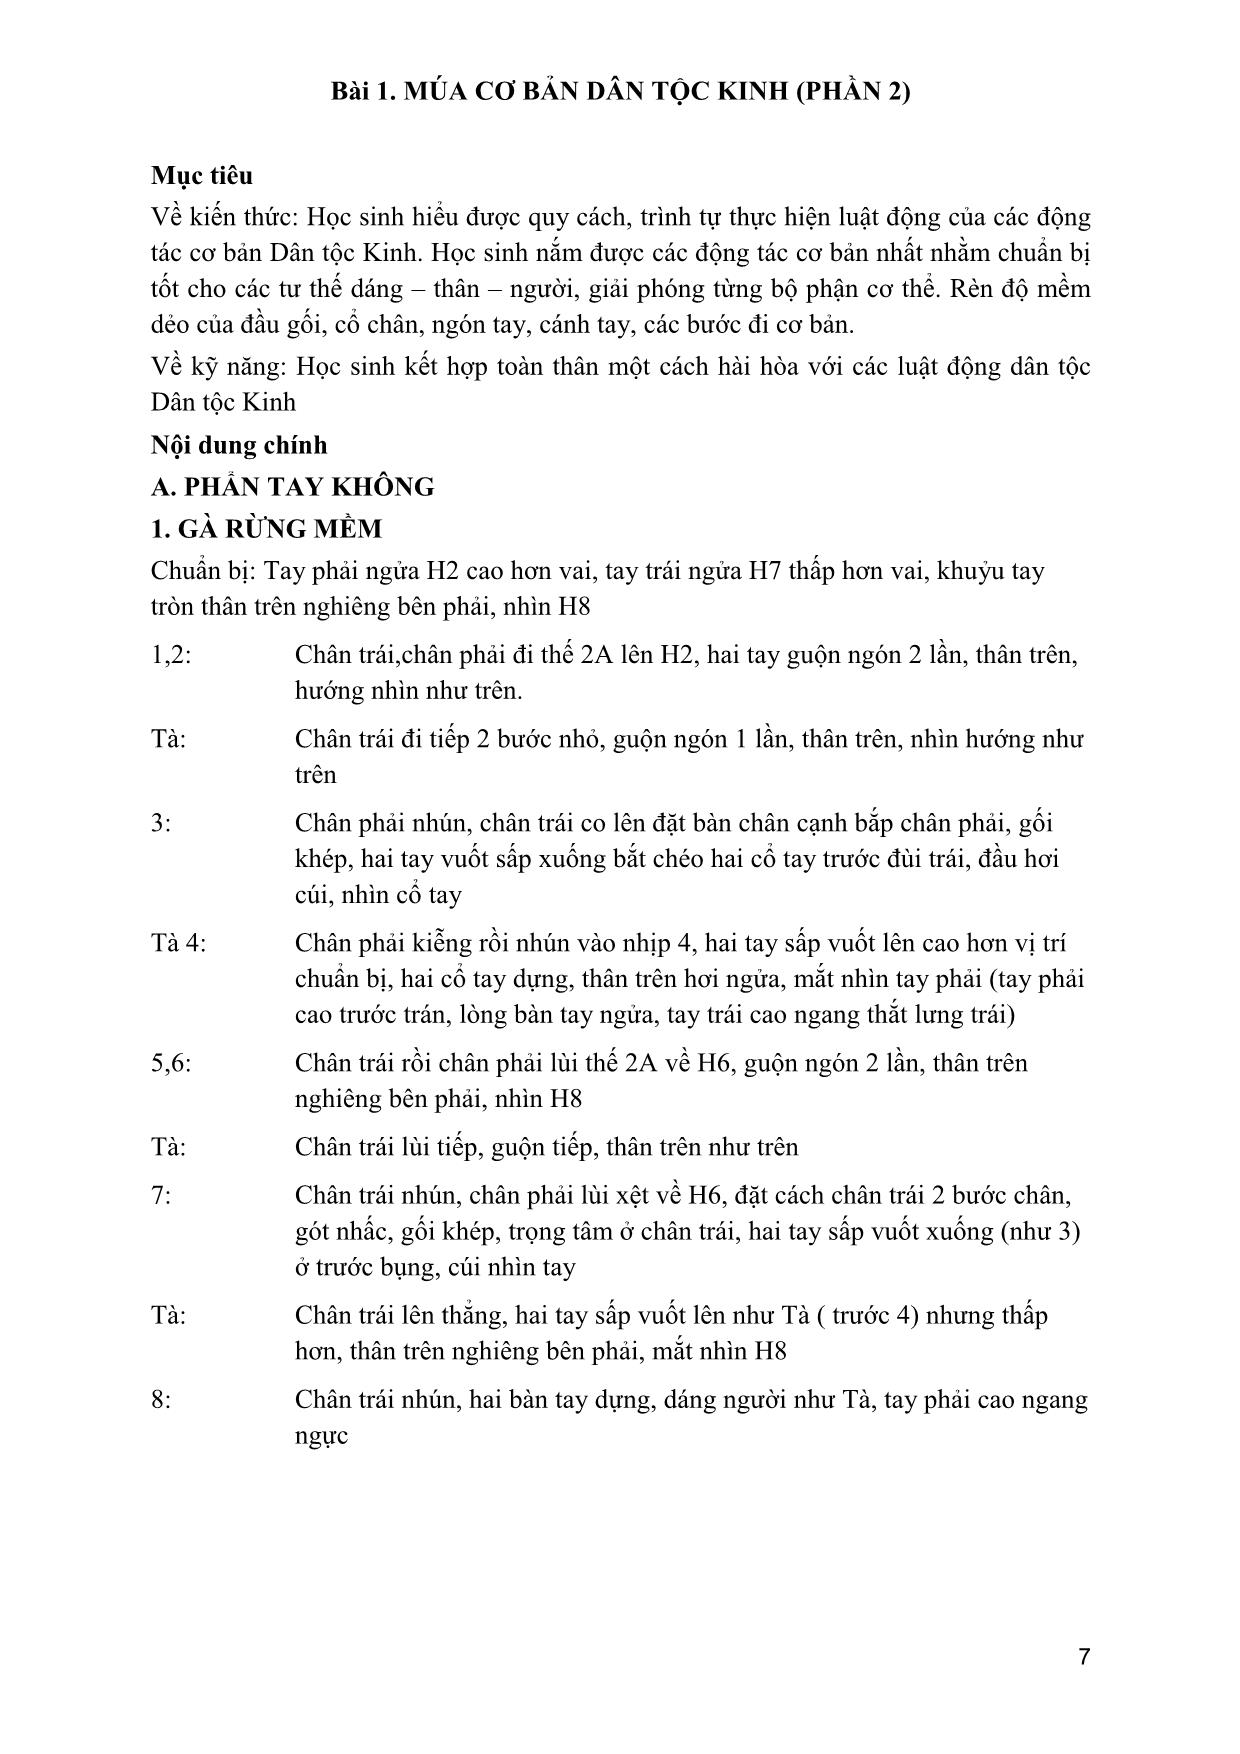 Giáo trình Múa dân gian dân tộc Việt Nam 2 trang 6